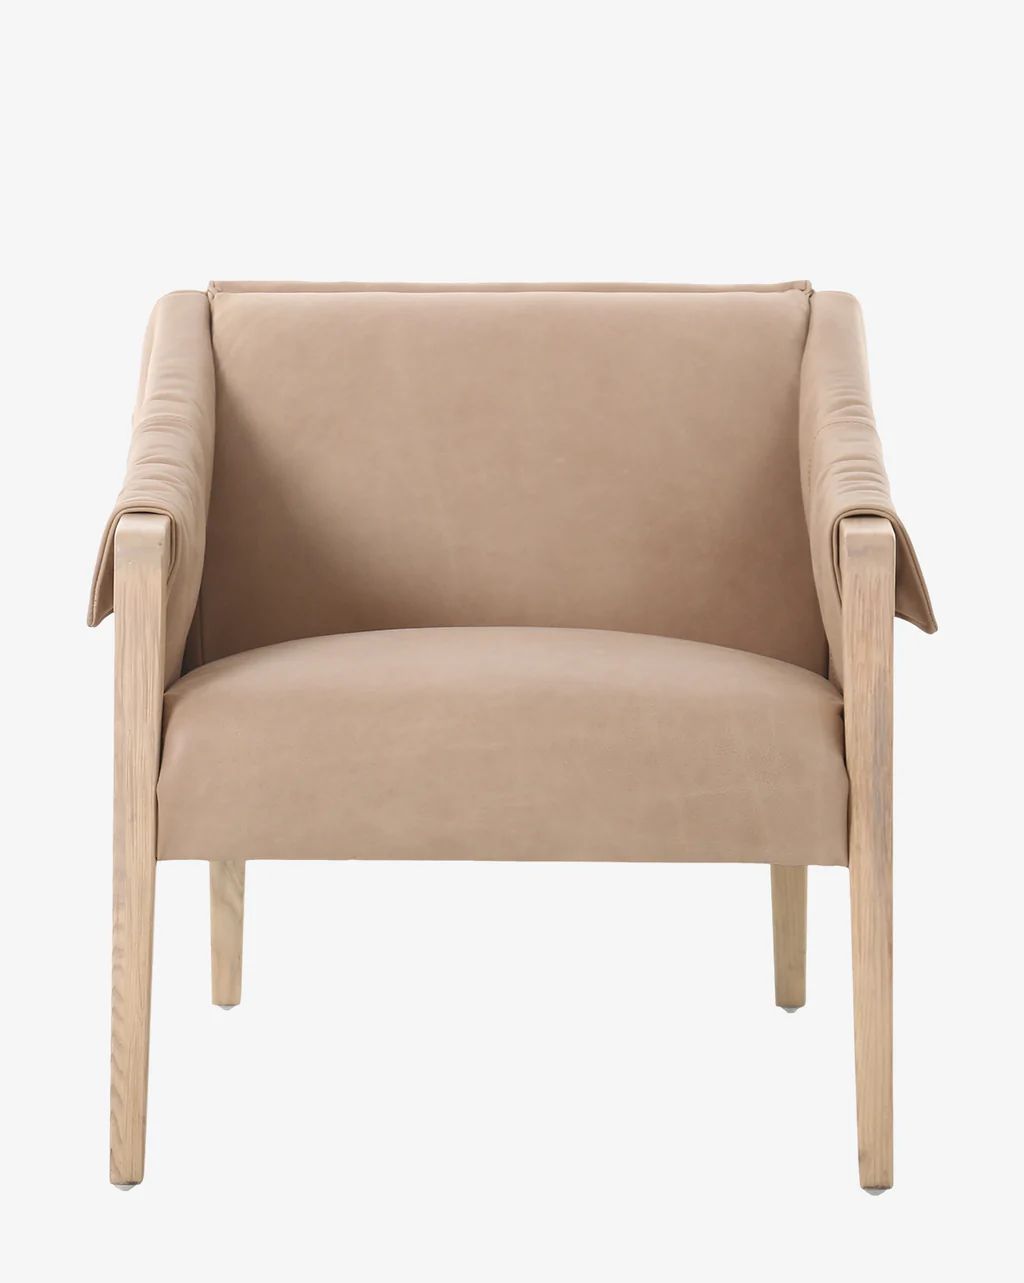 Payson Chair | McGee & Co.